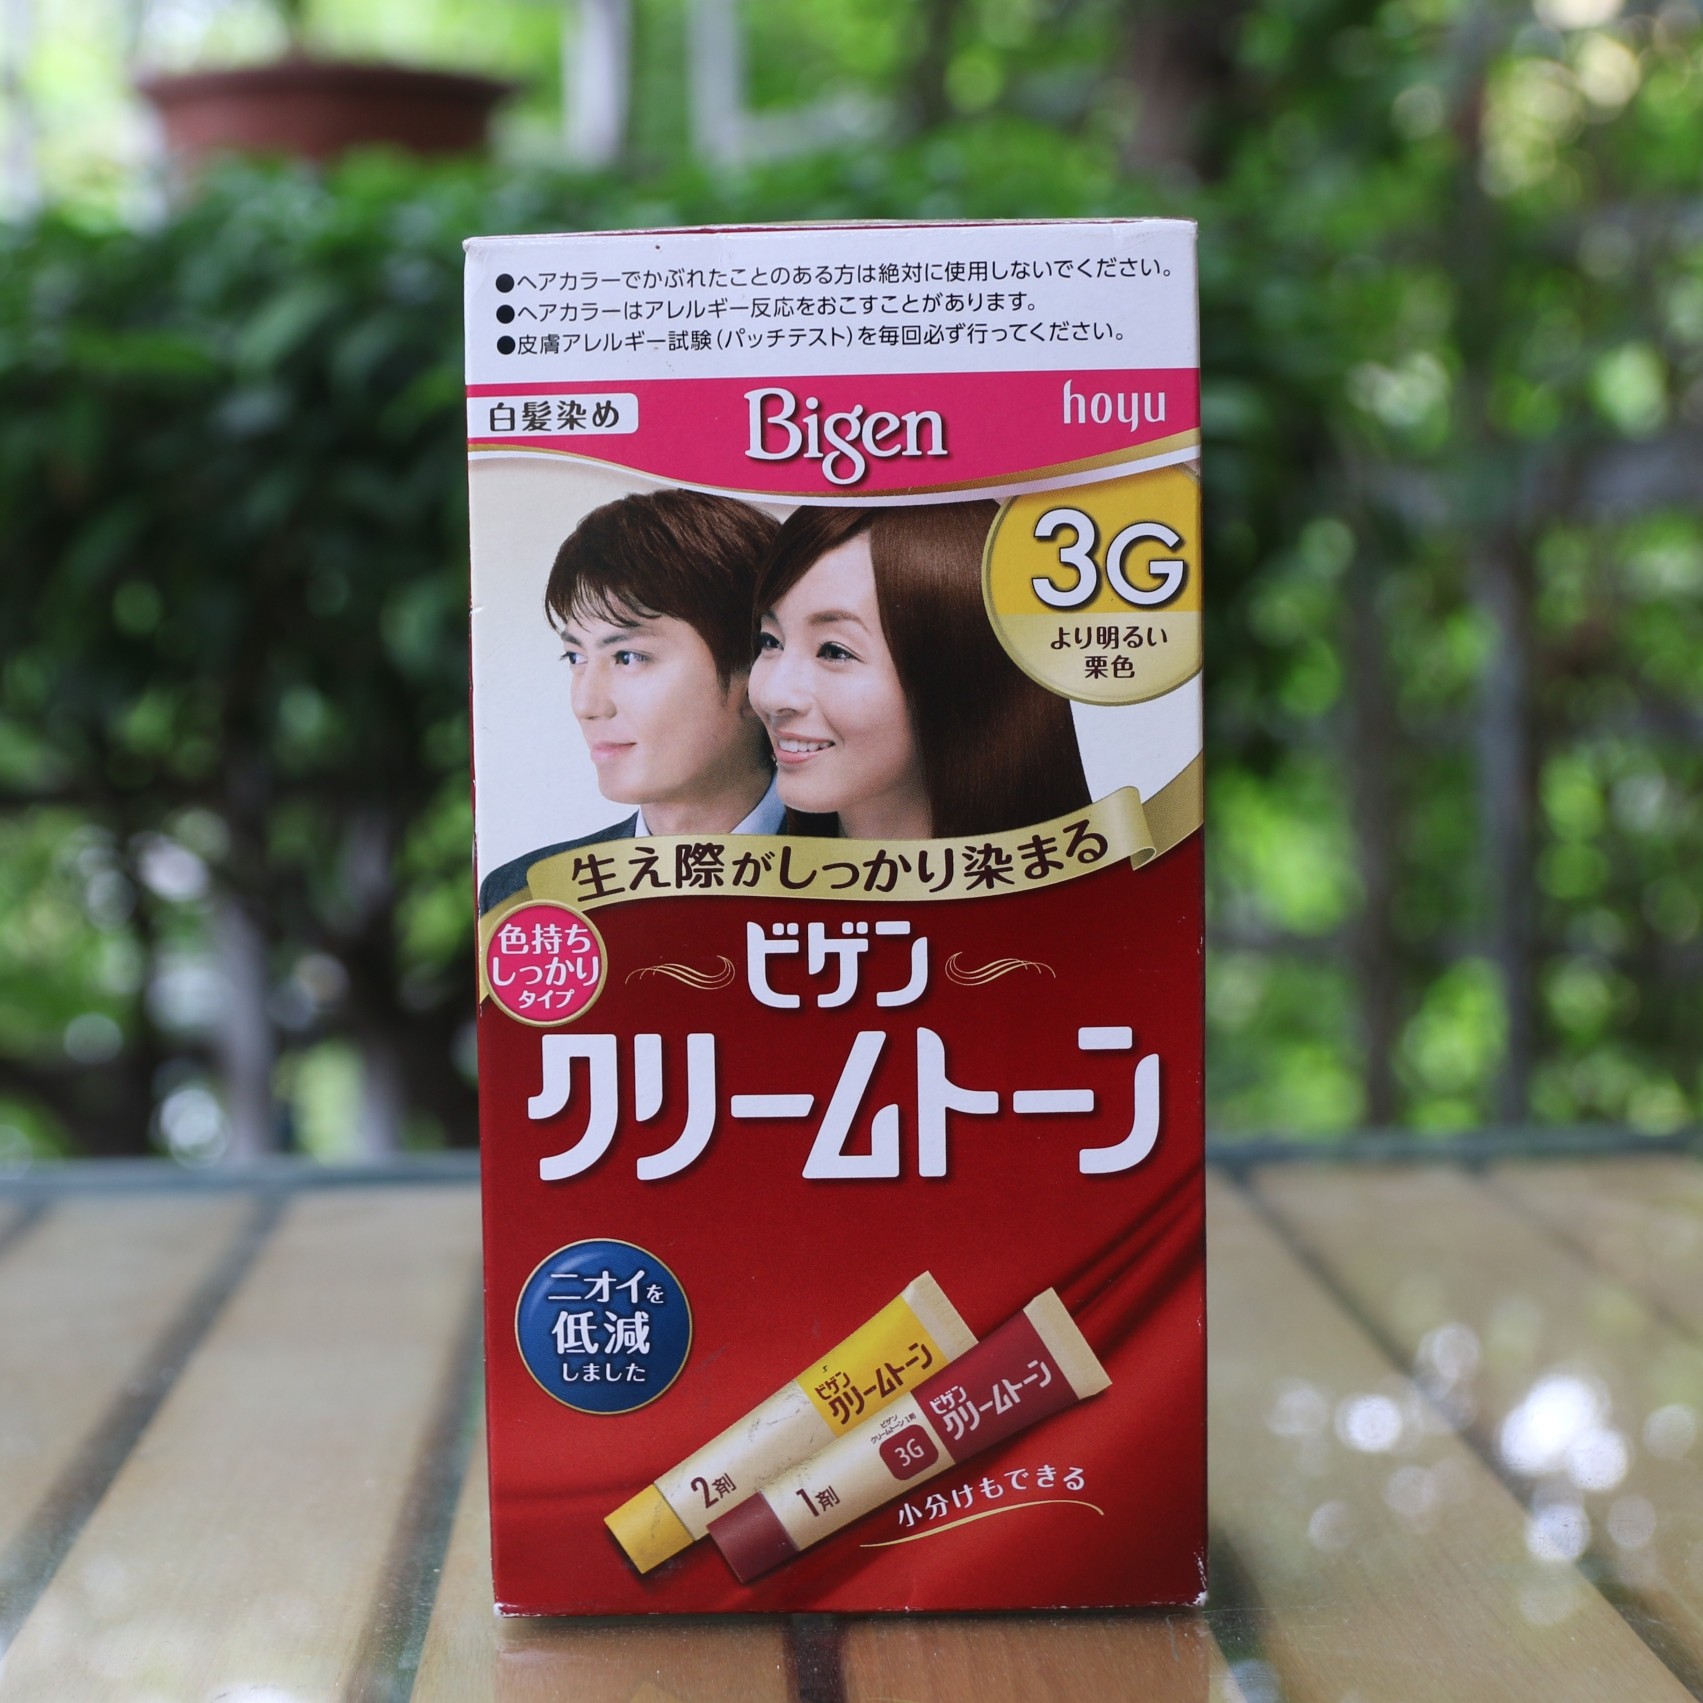 Thuốc nhuộm tóc thảo dược Bigen Nhật Bản giúp bạn giữ cho mái tóc của mình luôn sáng bóng và đầy sức sống. Tìm hiểu những bí quyết và kinh nghiệm để sử dụng thuốc nhuộm tóc Bigen Nhật Bản một cách chuyên nghiệp và đạt hiệu quả tối đa.